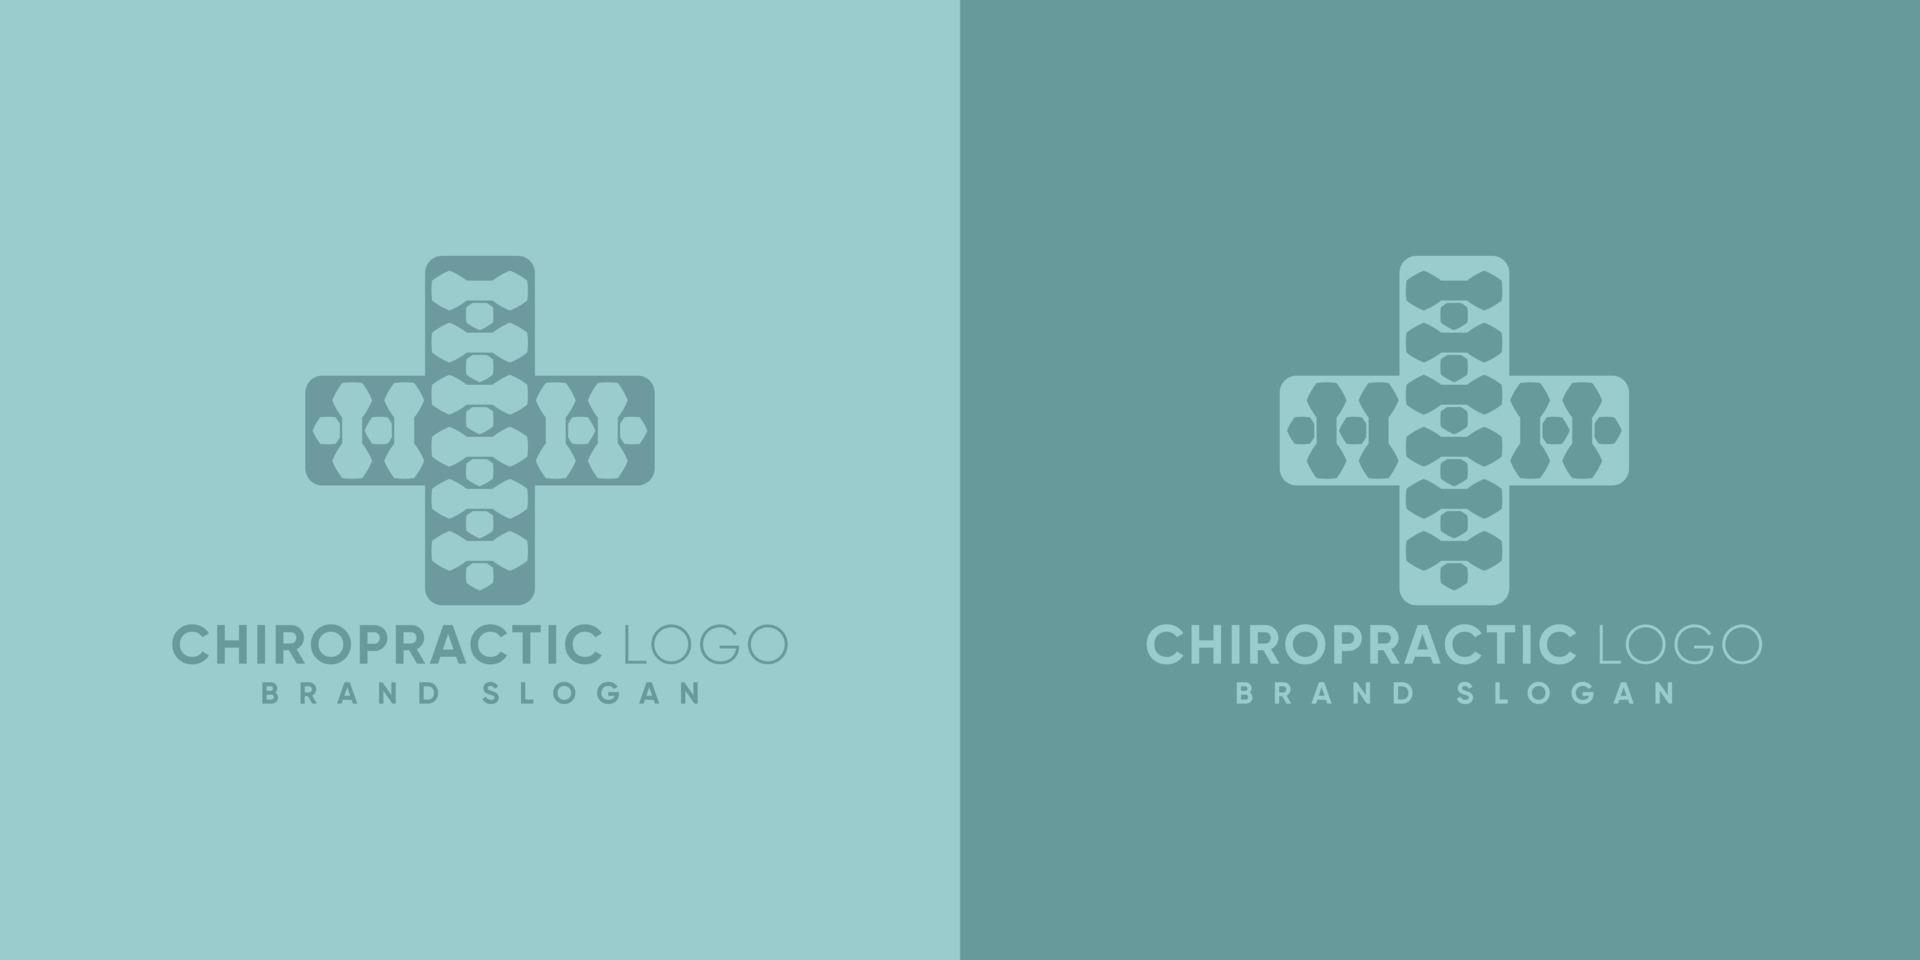 kiropraktik logotyp med läkare tecken modern stil premie vektor